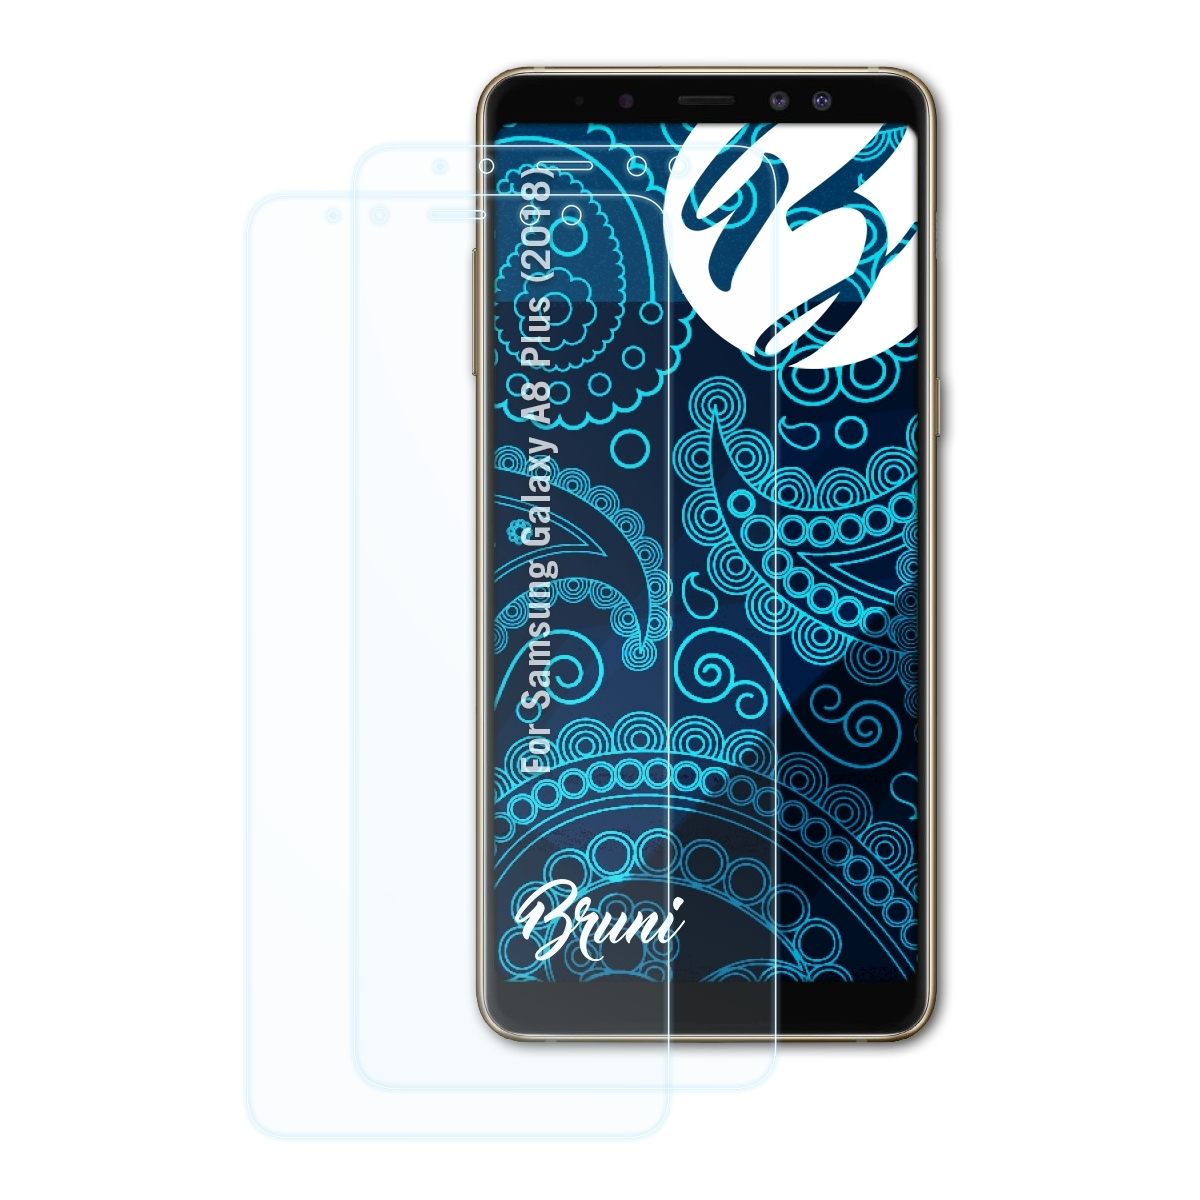 (2018)) A8 BRUNI Plus Basics-Clear Schutzfolie(für Samsung Galaxy 2x